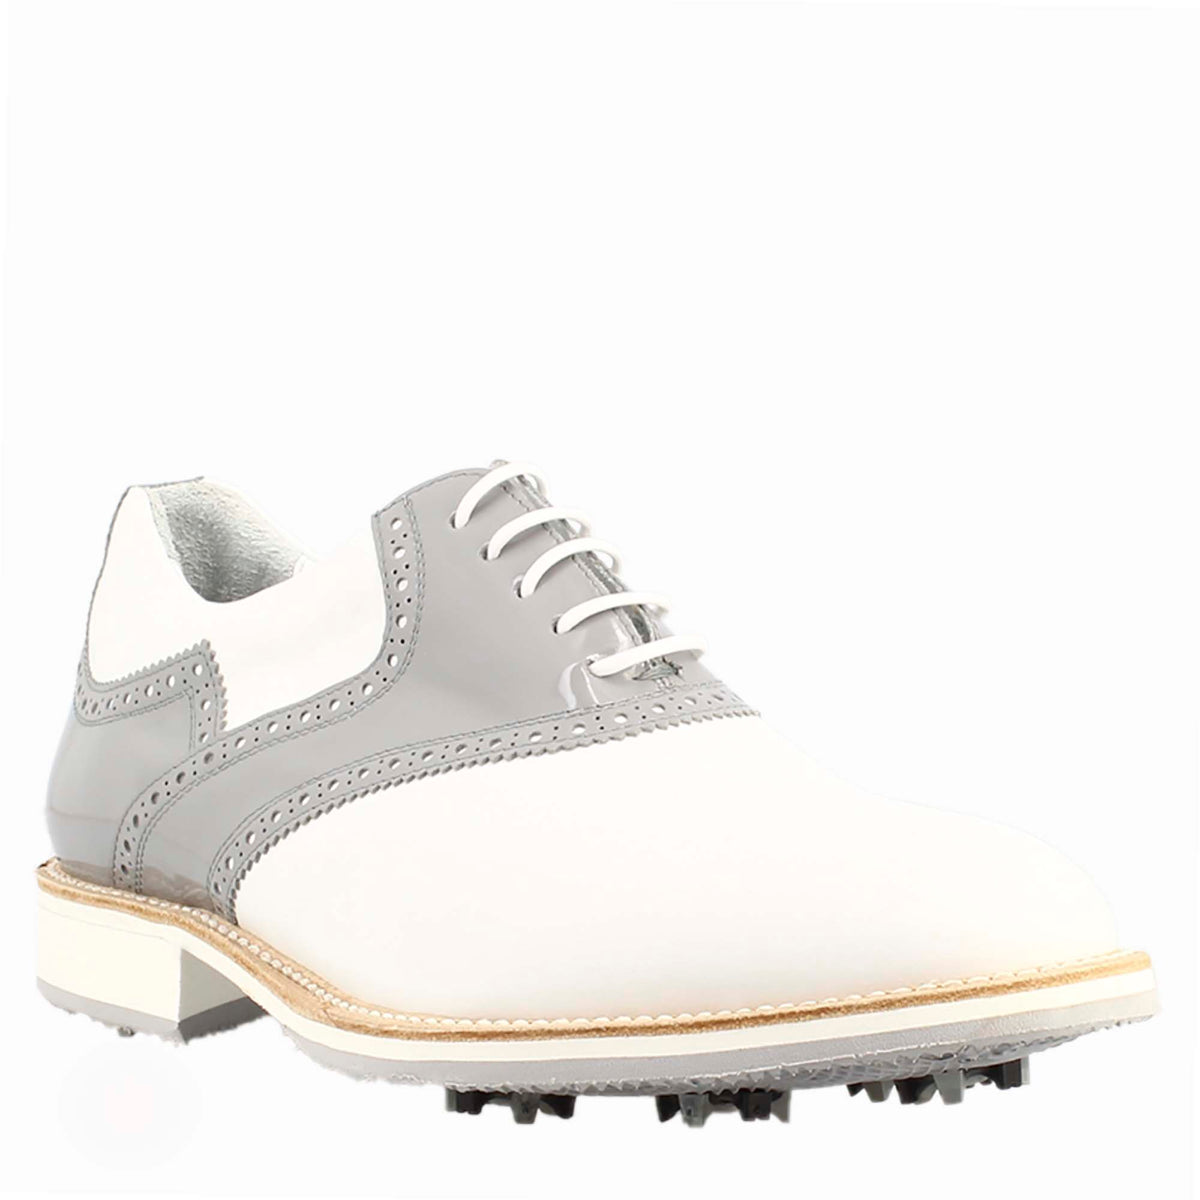 Damen-Golfschuhe aus weißem und grauem Leder mit handgefertigten Brogue-Details